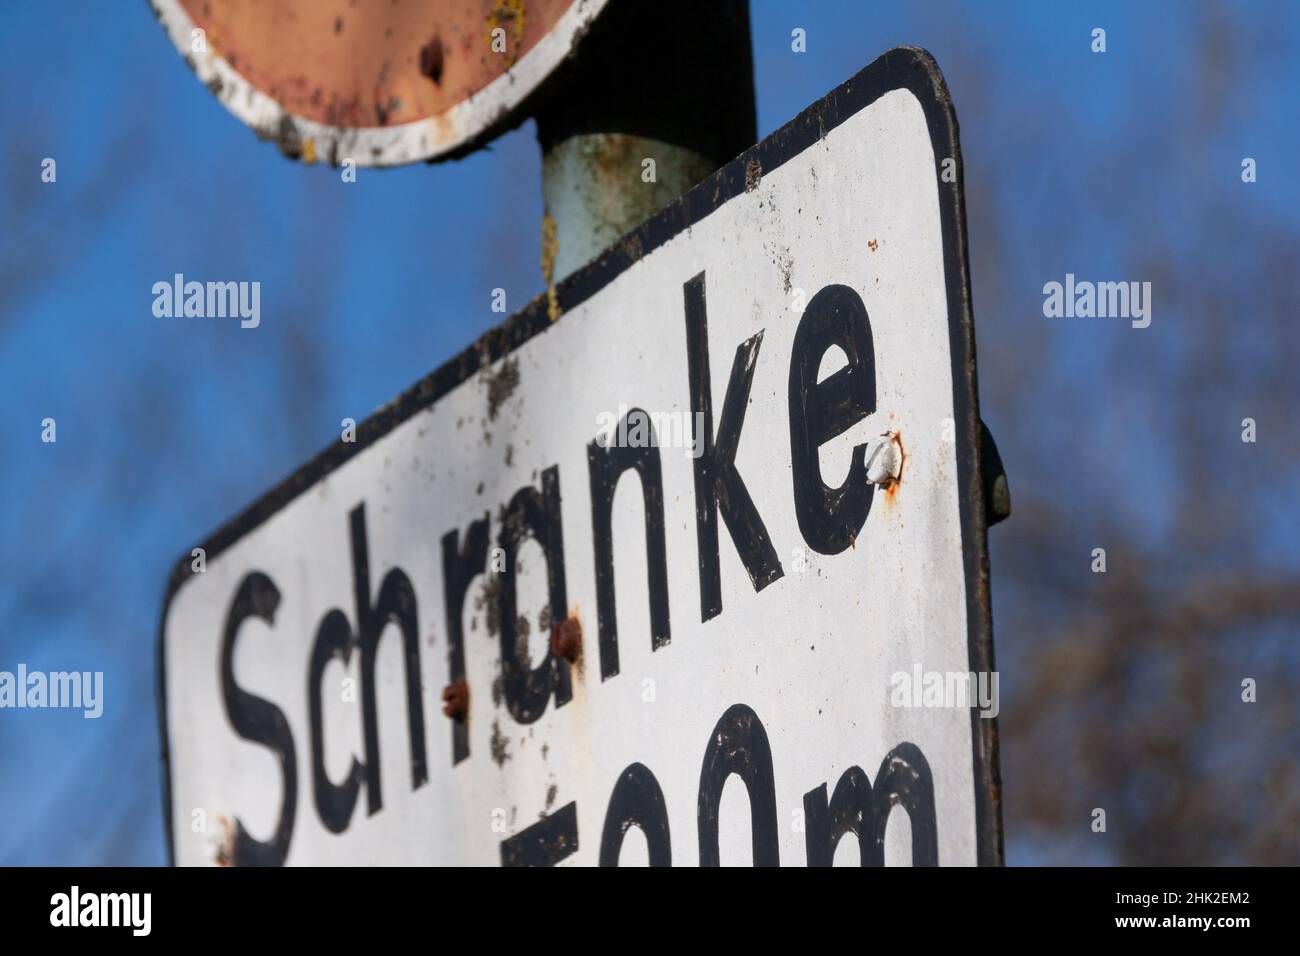 Achtung Schranke Verkehrszeichen Stock Photo